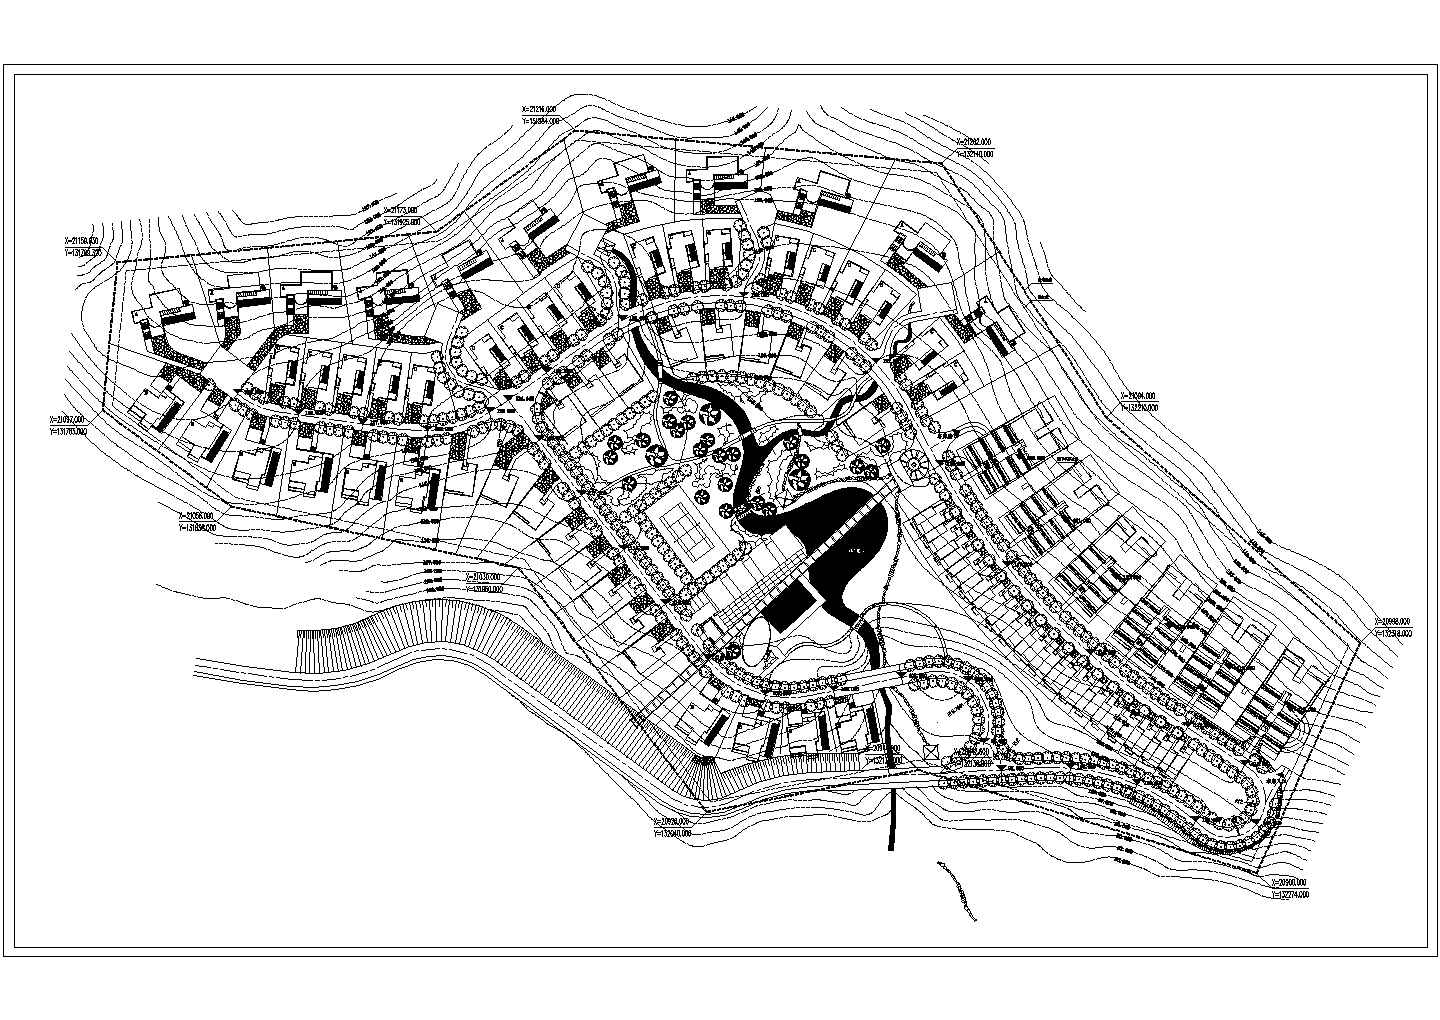 东南某市建设小区建筑规划总布置图